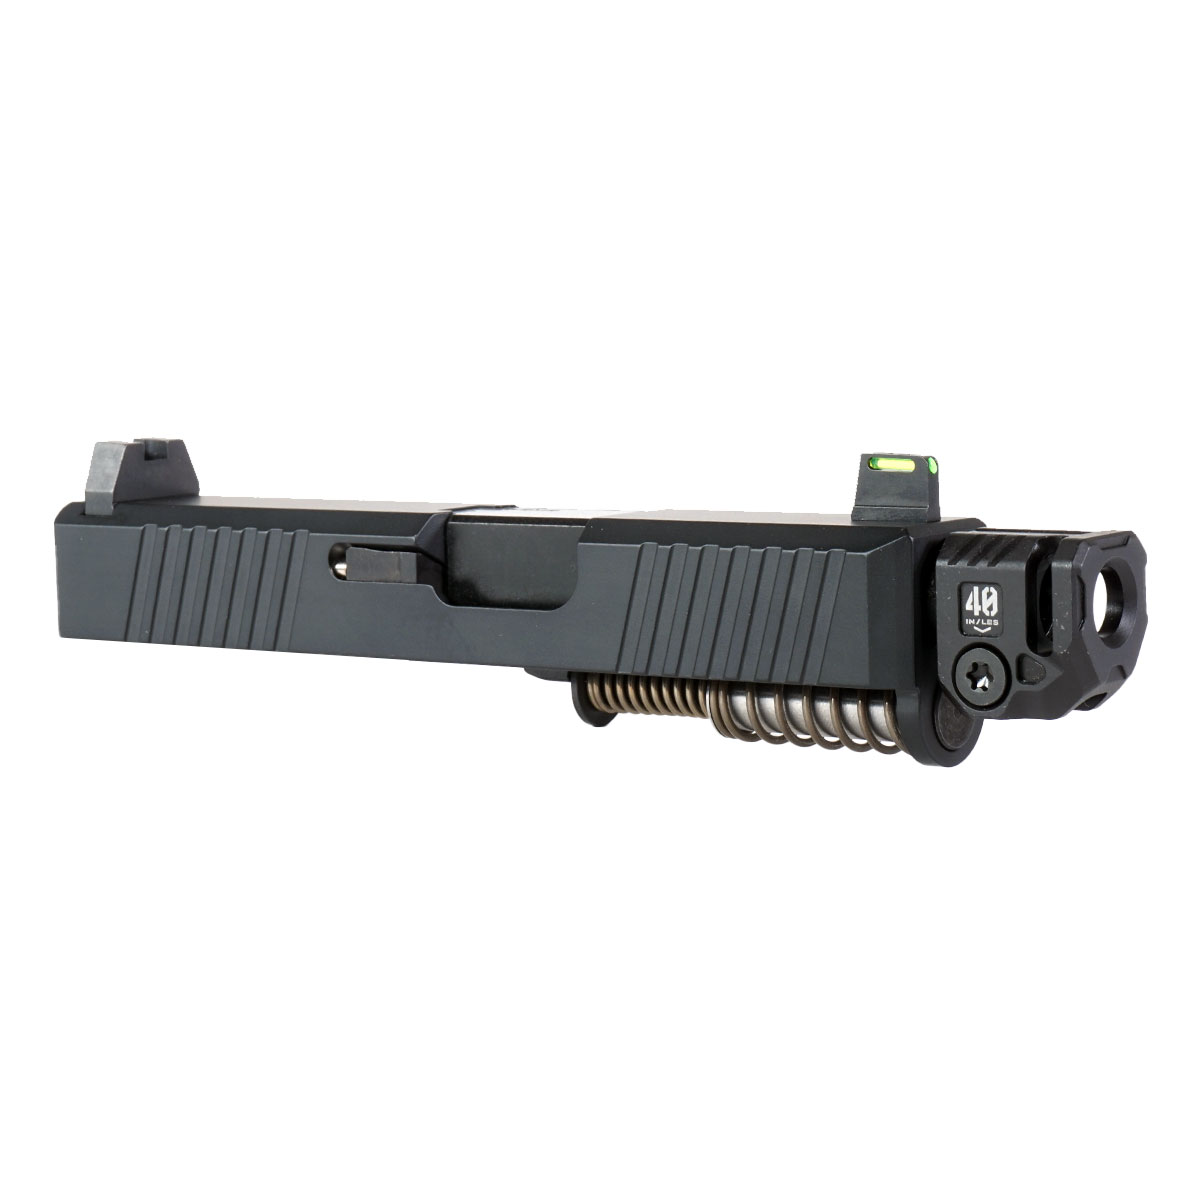 DD 'Joint Resolution' 9mm Complete Slide Kit - Glock 26 Gen 1-3 Compatible